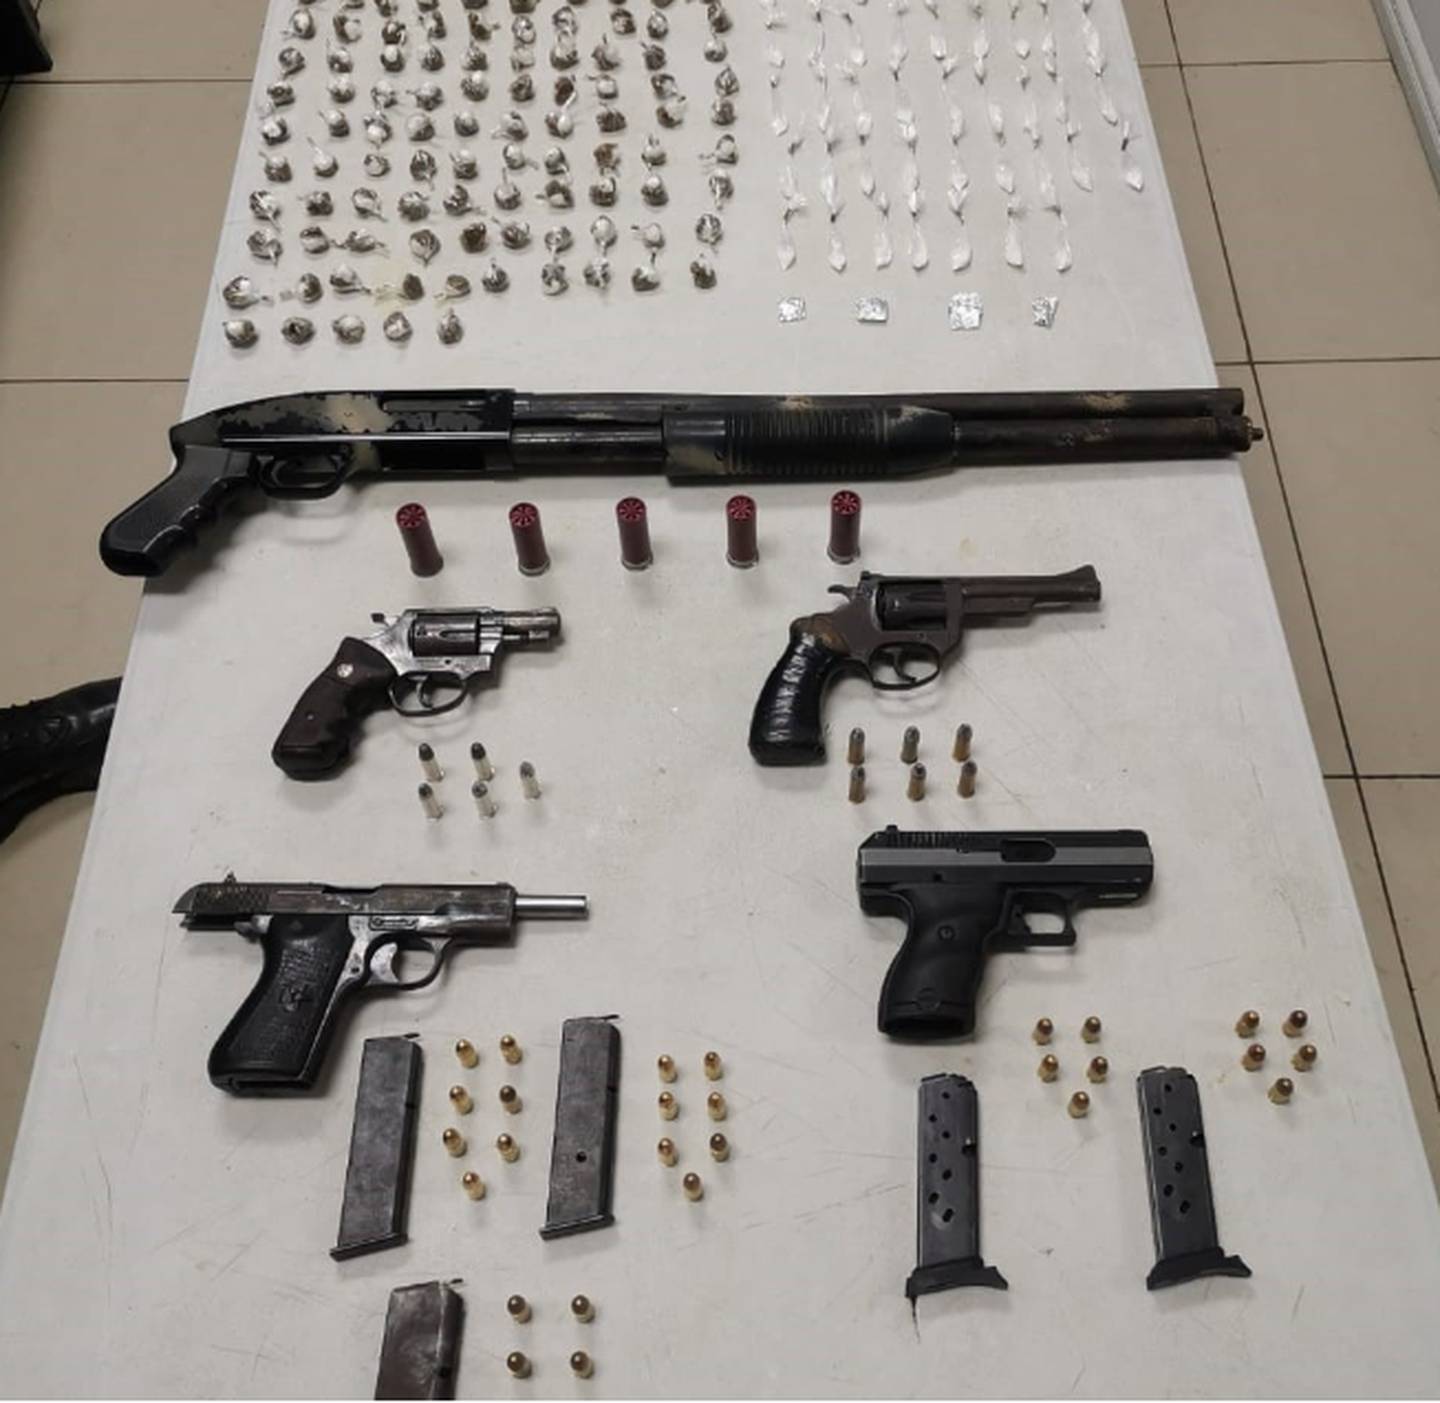 Las armas, drogas, cargadores y municiones quedaron en la fiscalía con un informe para luego ser pasados a un proceso de destrucción. Foto: Cortesía MSP.